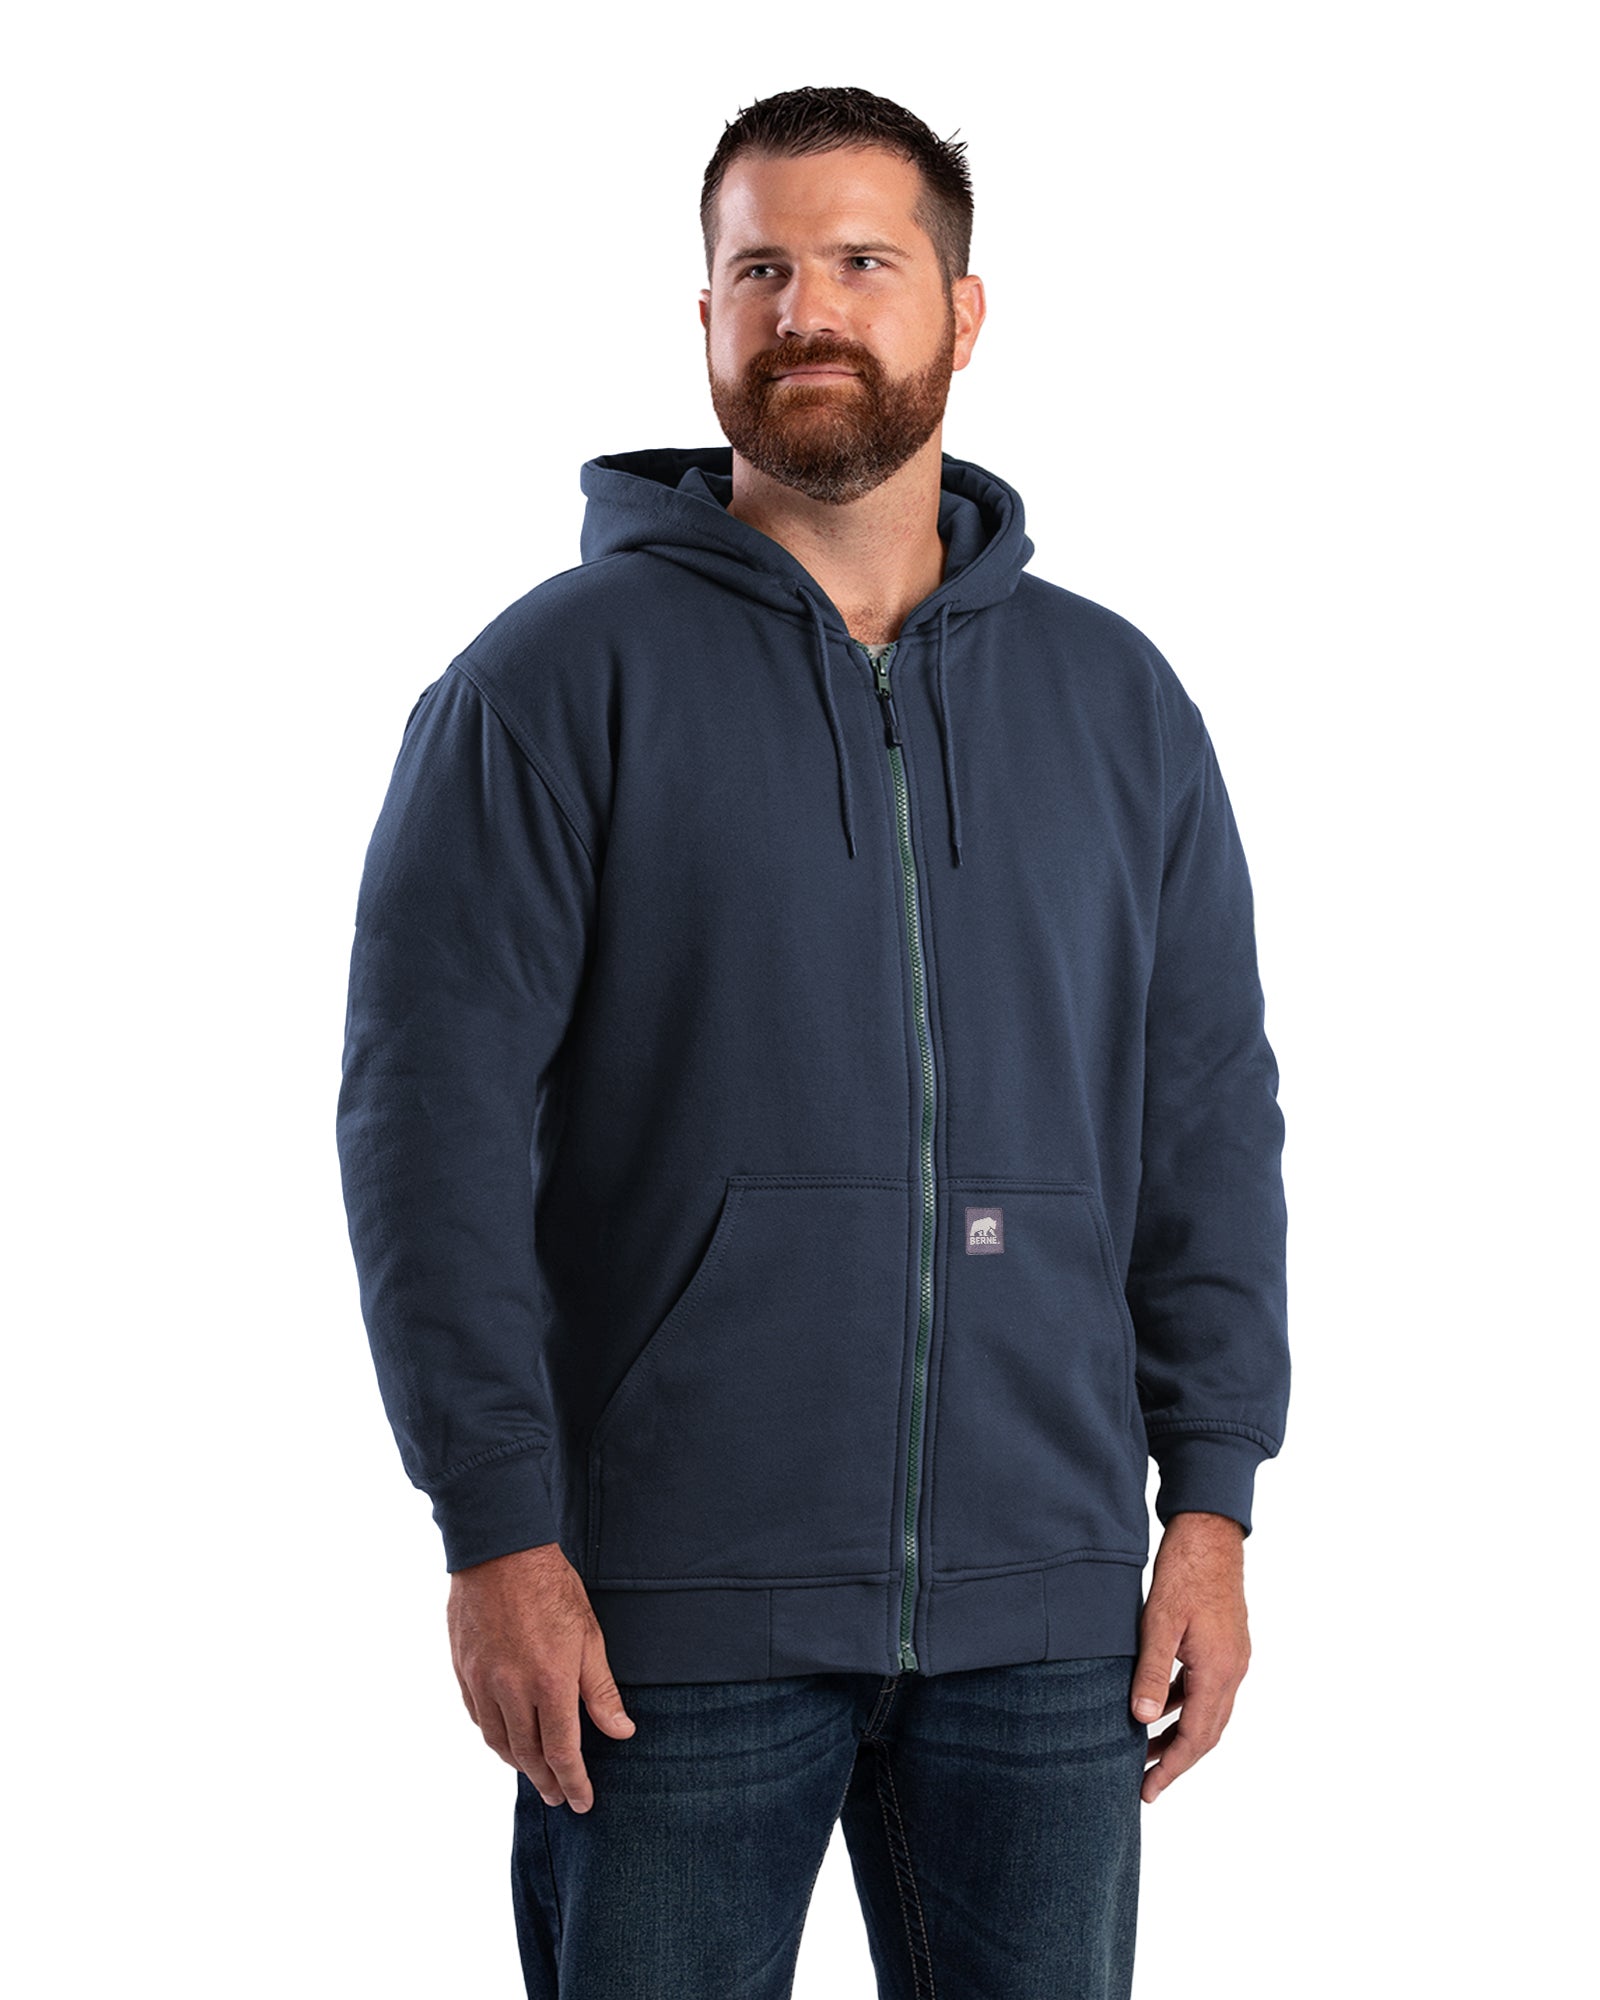 SZ101NV Heritage Thermal-Lined Full-Zip Hooded Sweatshirt